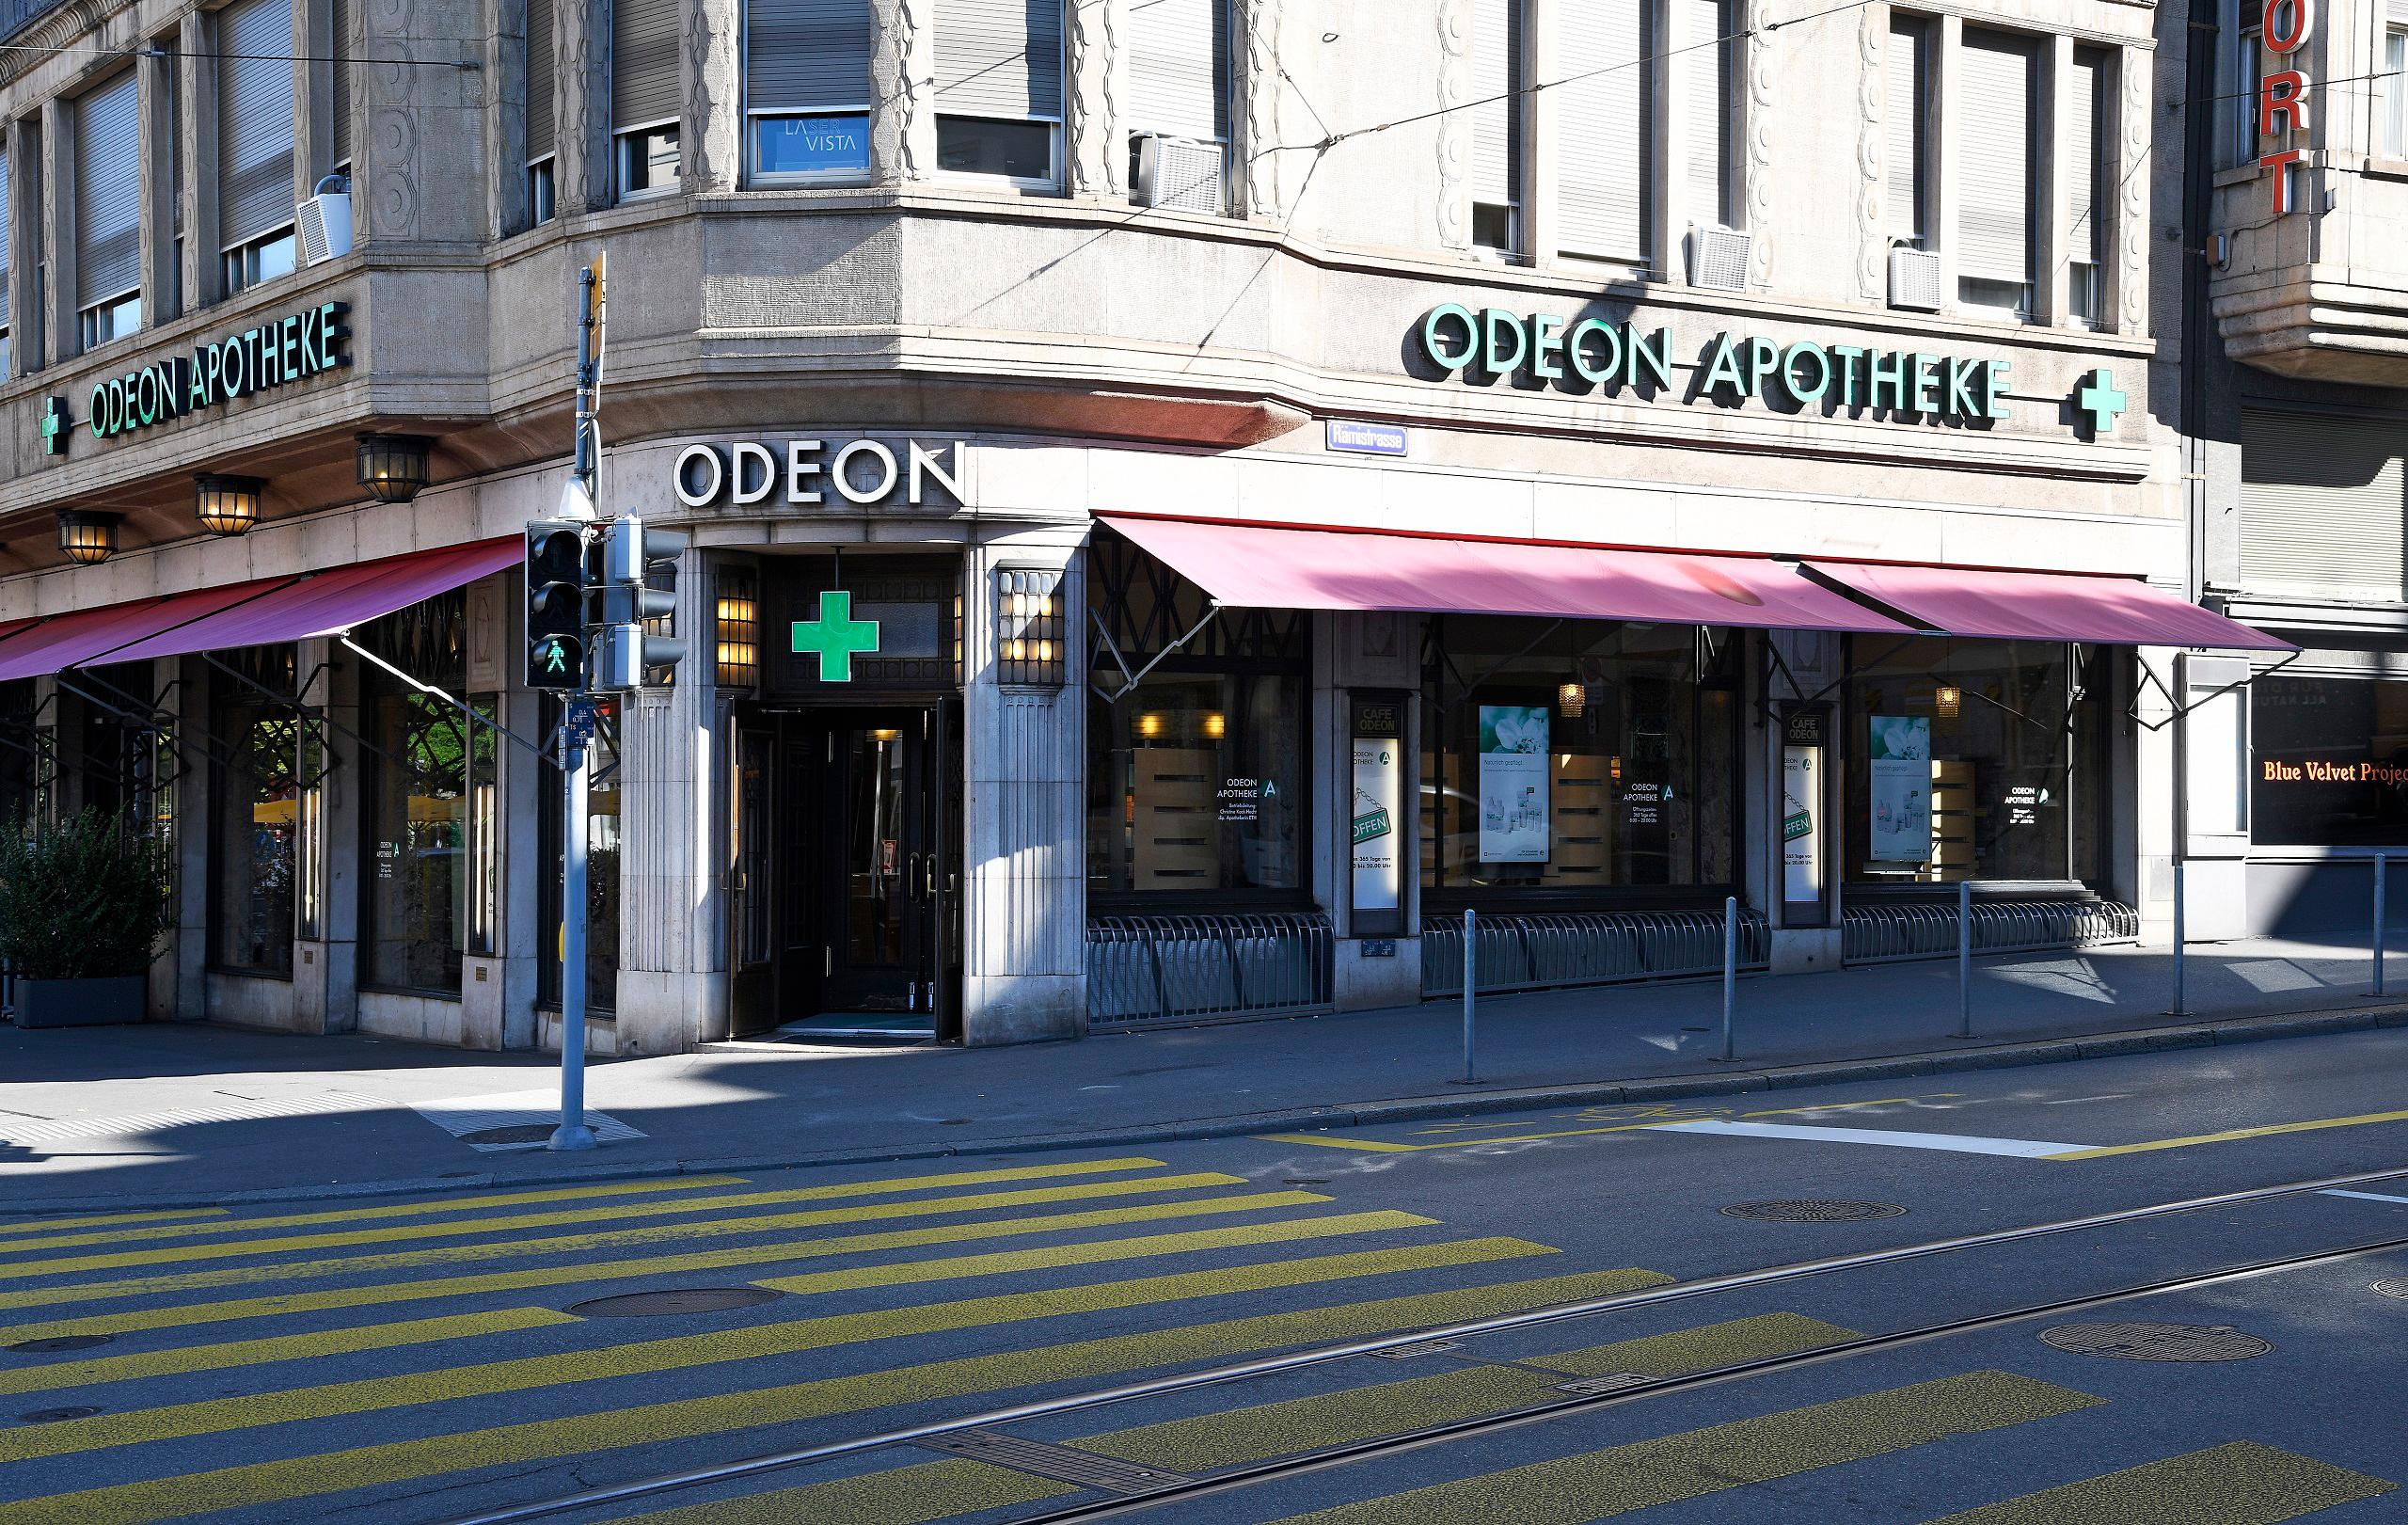 Bilder Odeon Apotheke